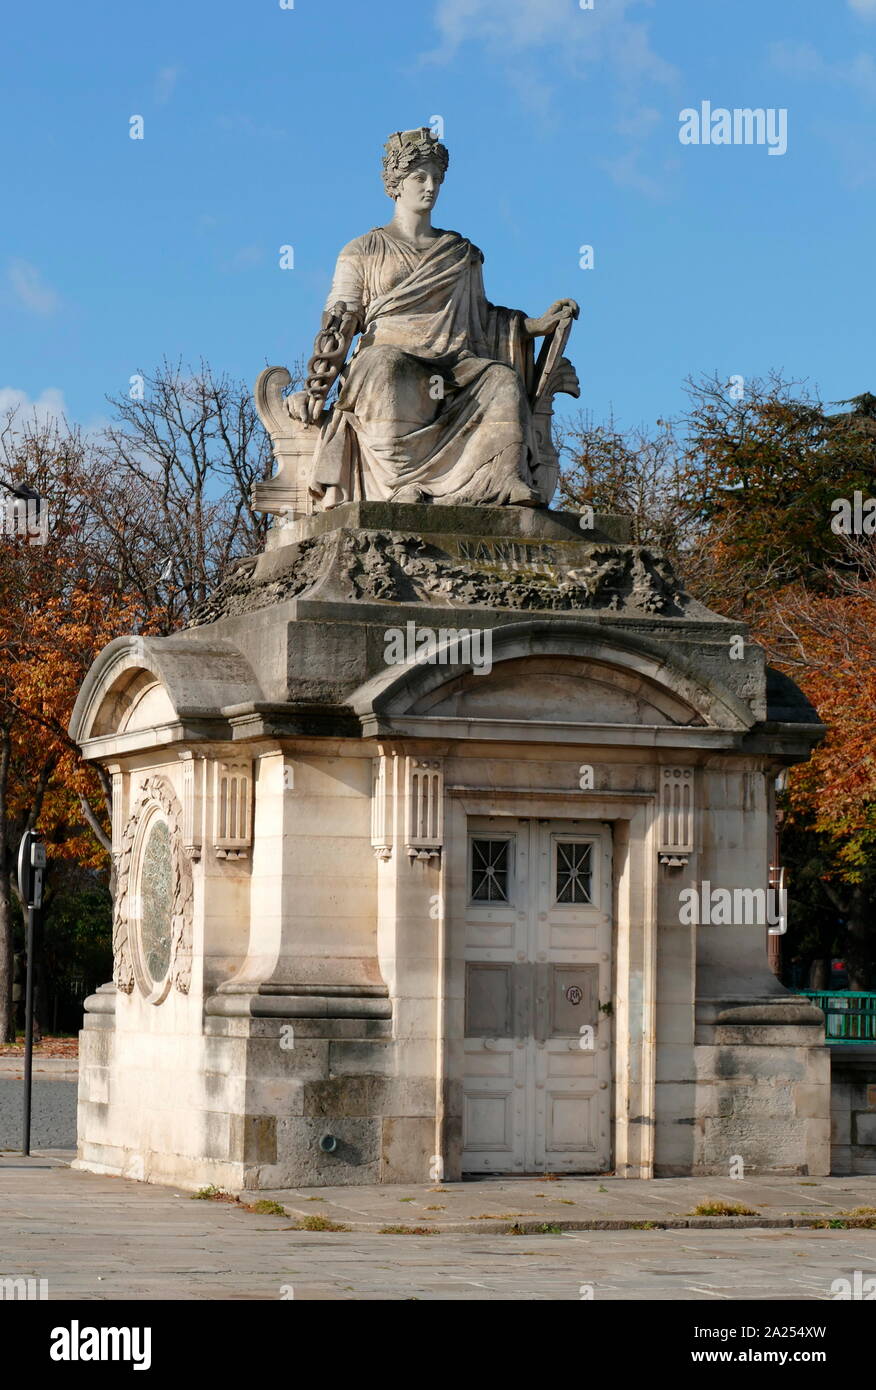 Statue représentant Nantes à la place de la Concorde, Paris, France Banque D'Images